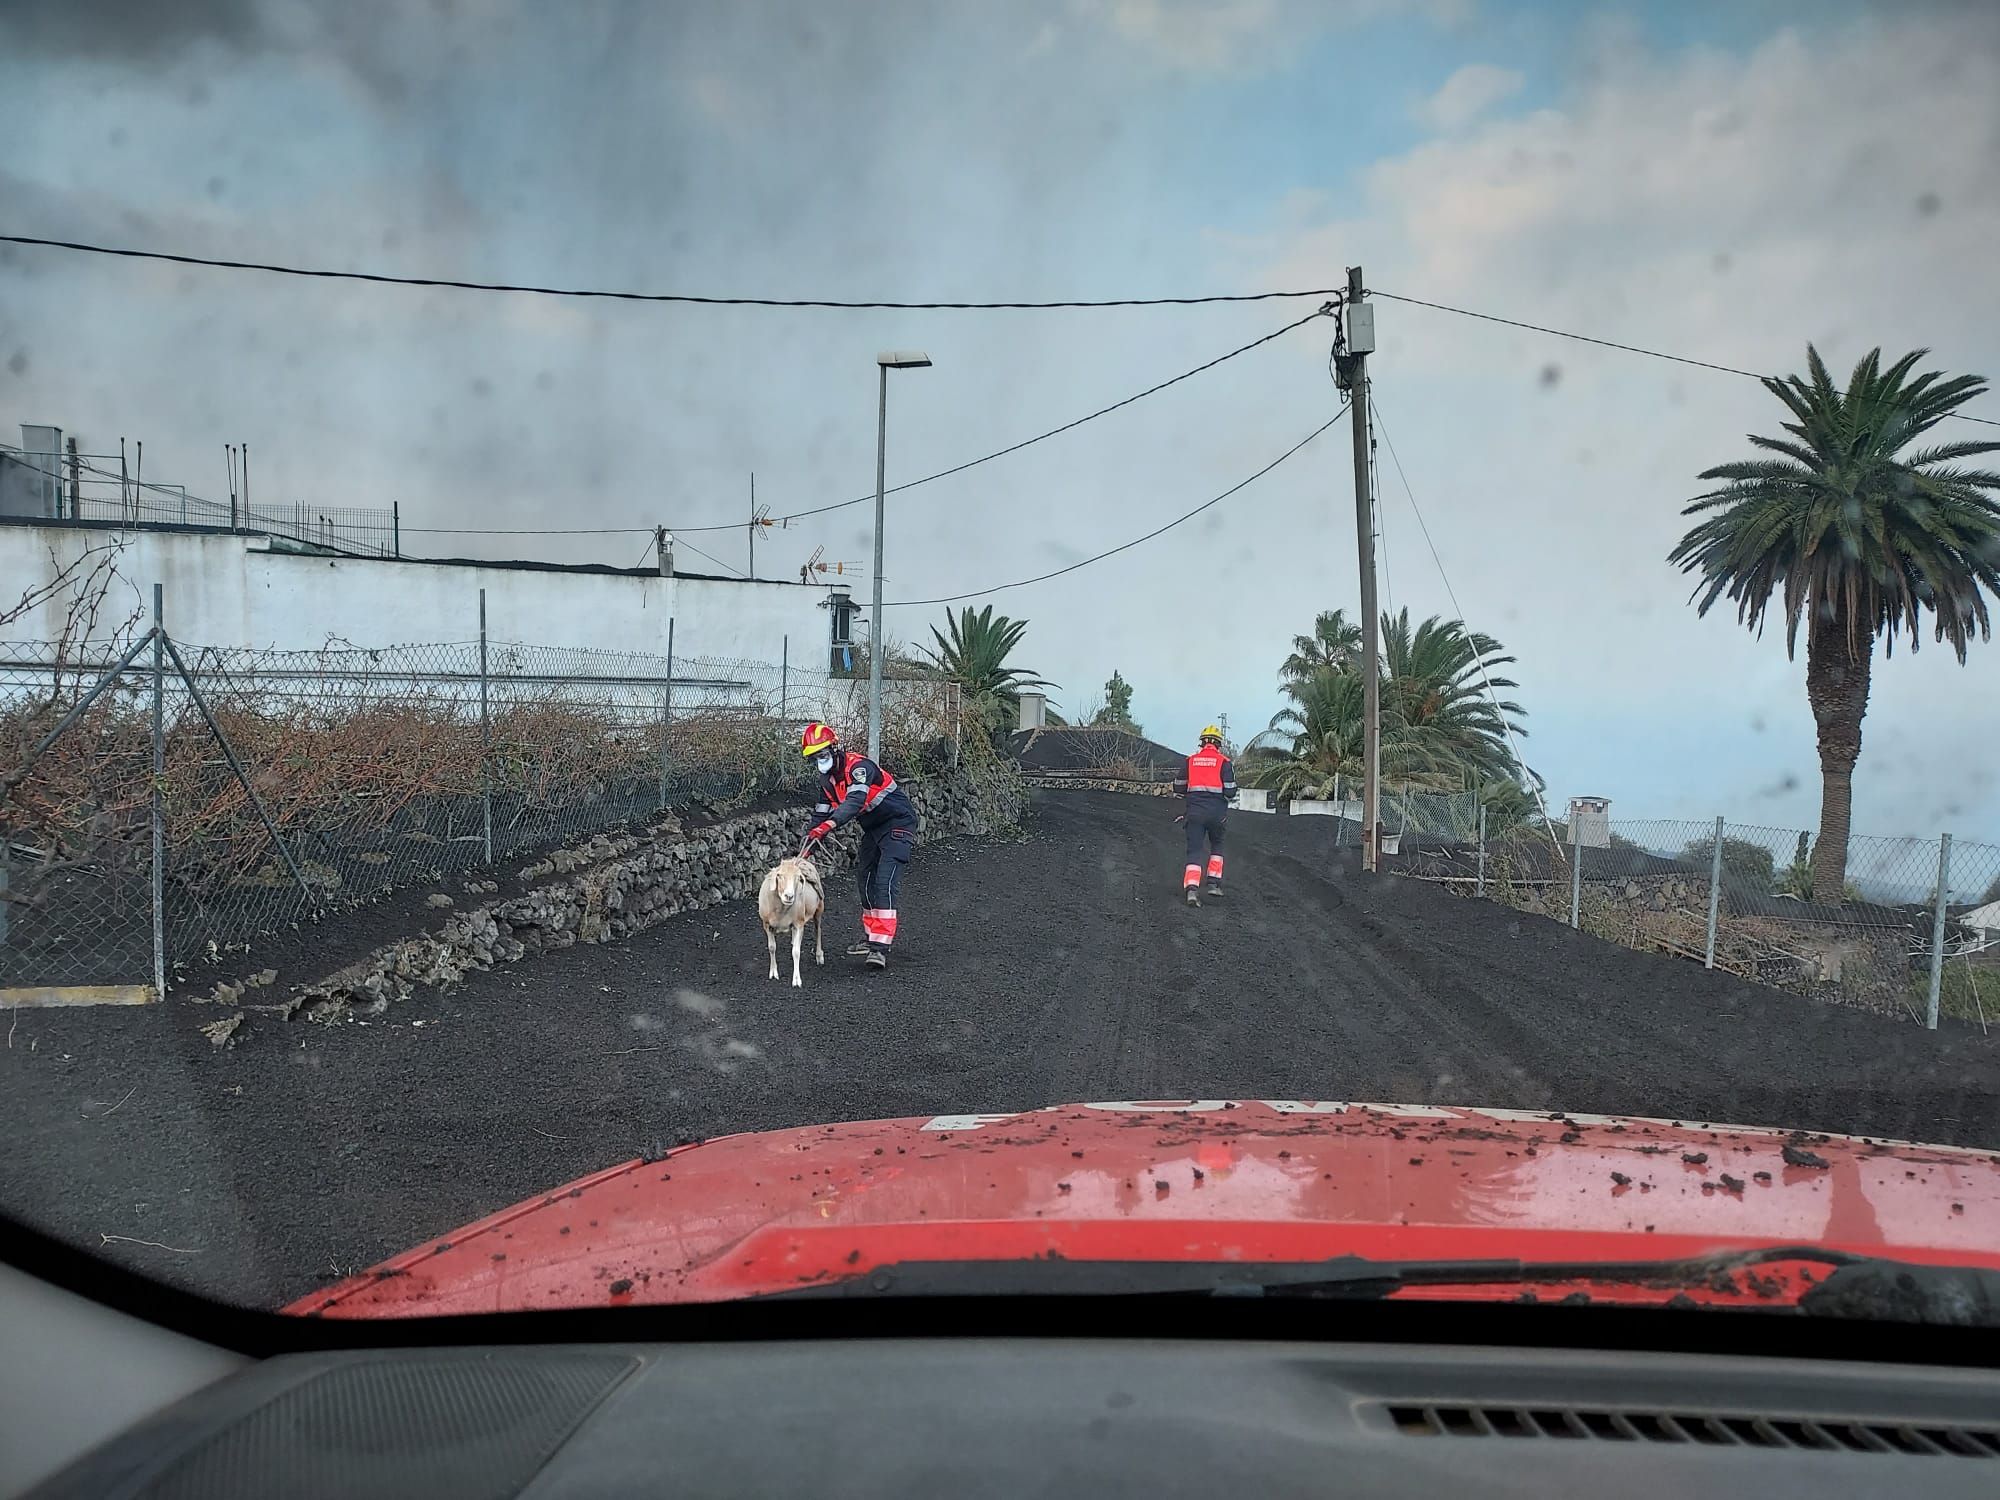 Erupción volcánica: Ayuda de los bomberos de Lanzarote en La Palma